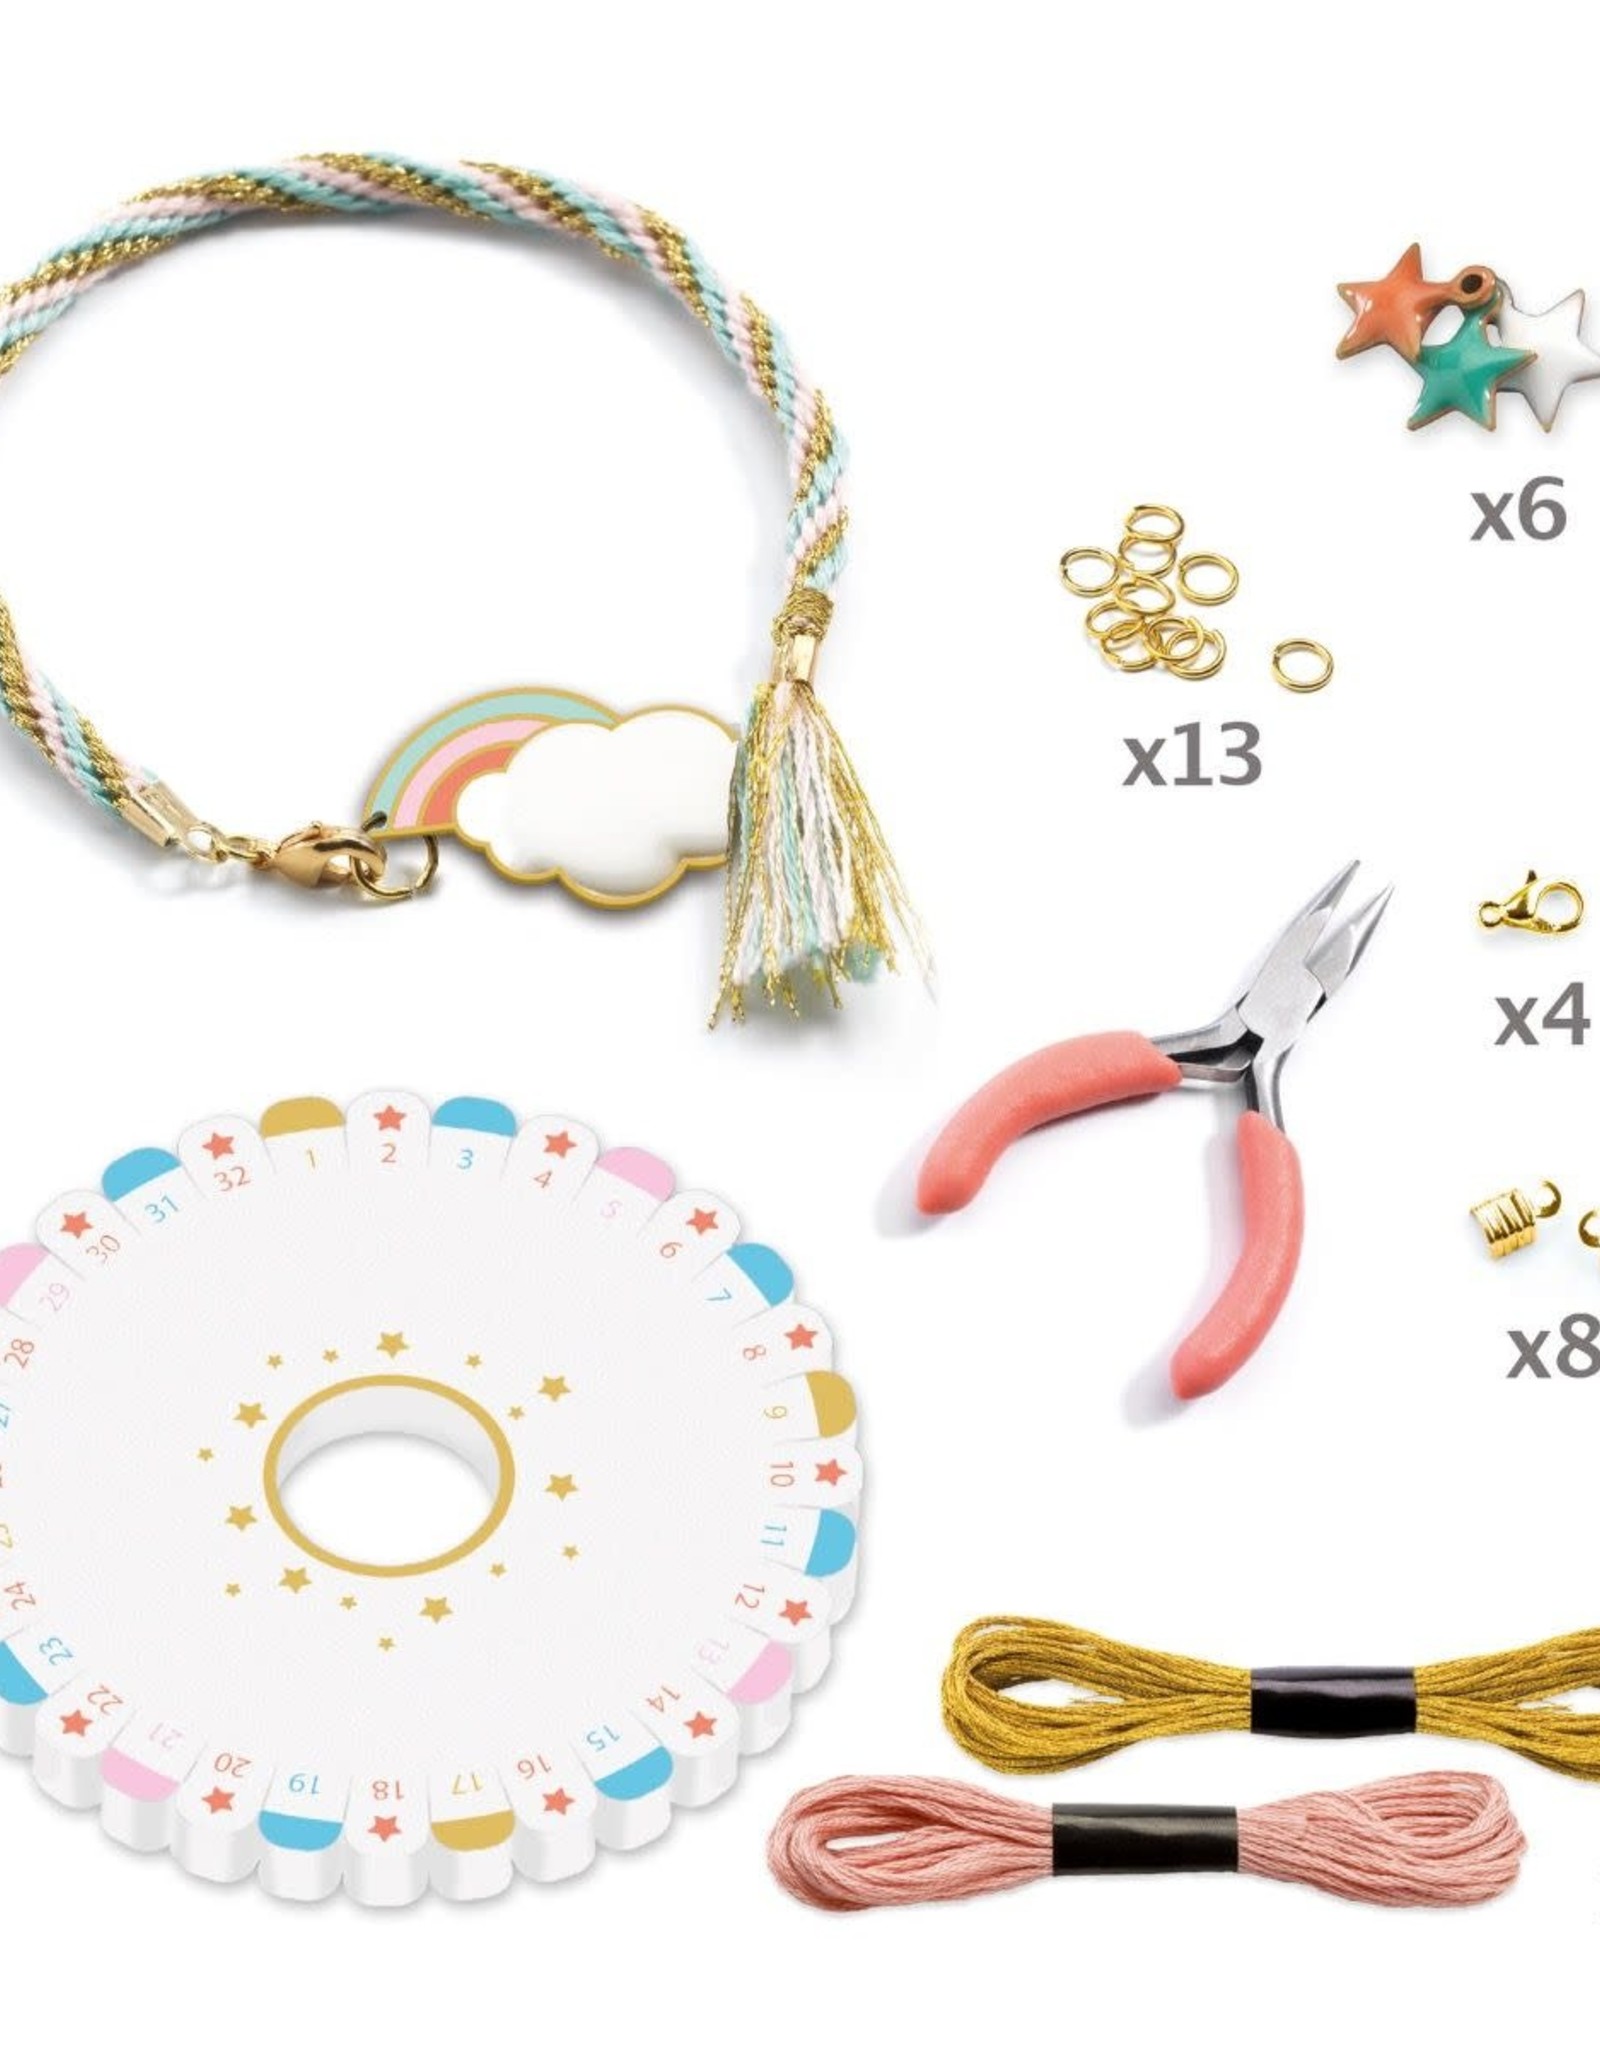 Djeco Djeco Celeste Beads & Jewelry